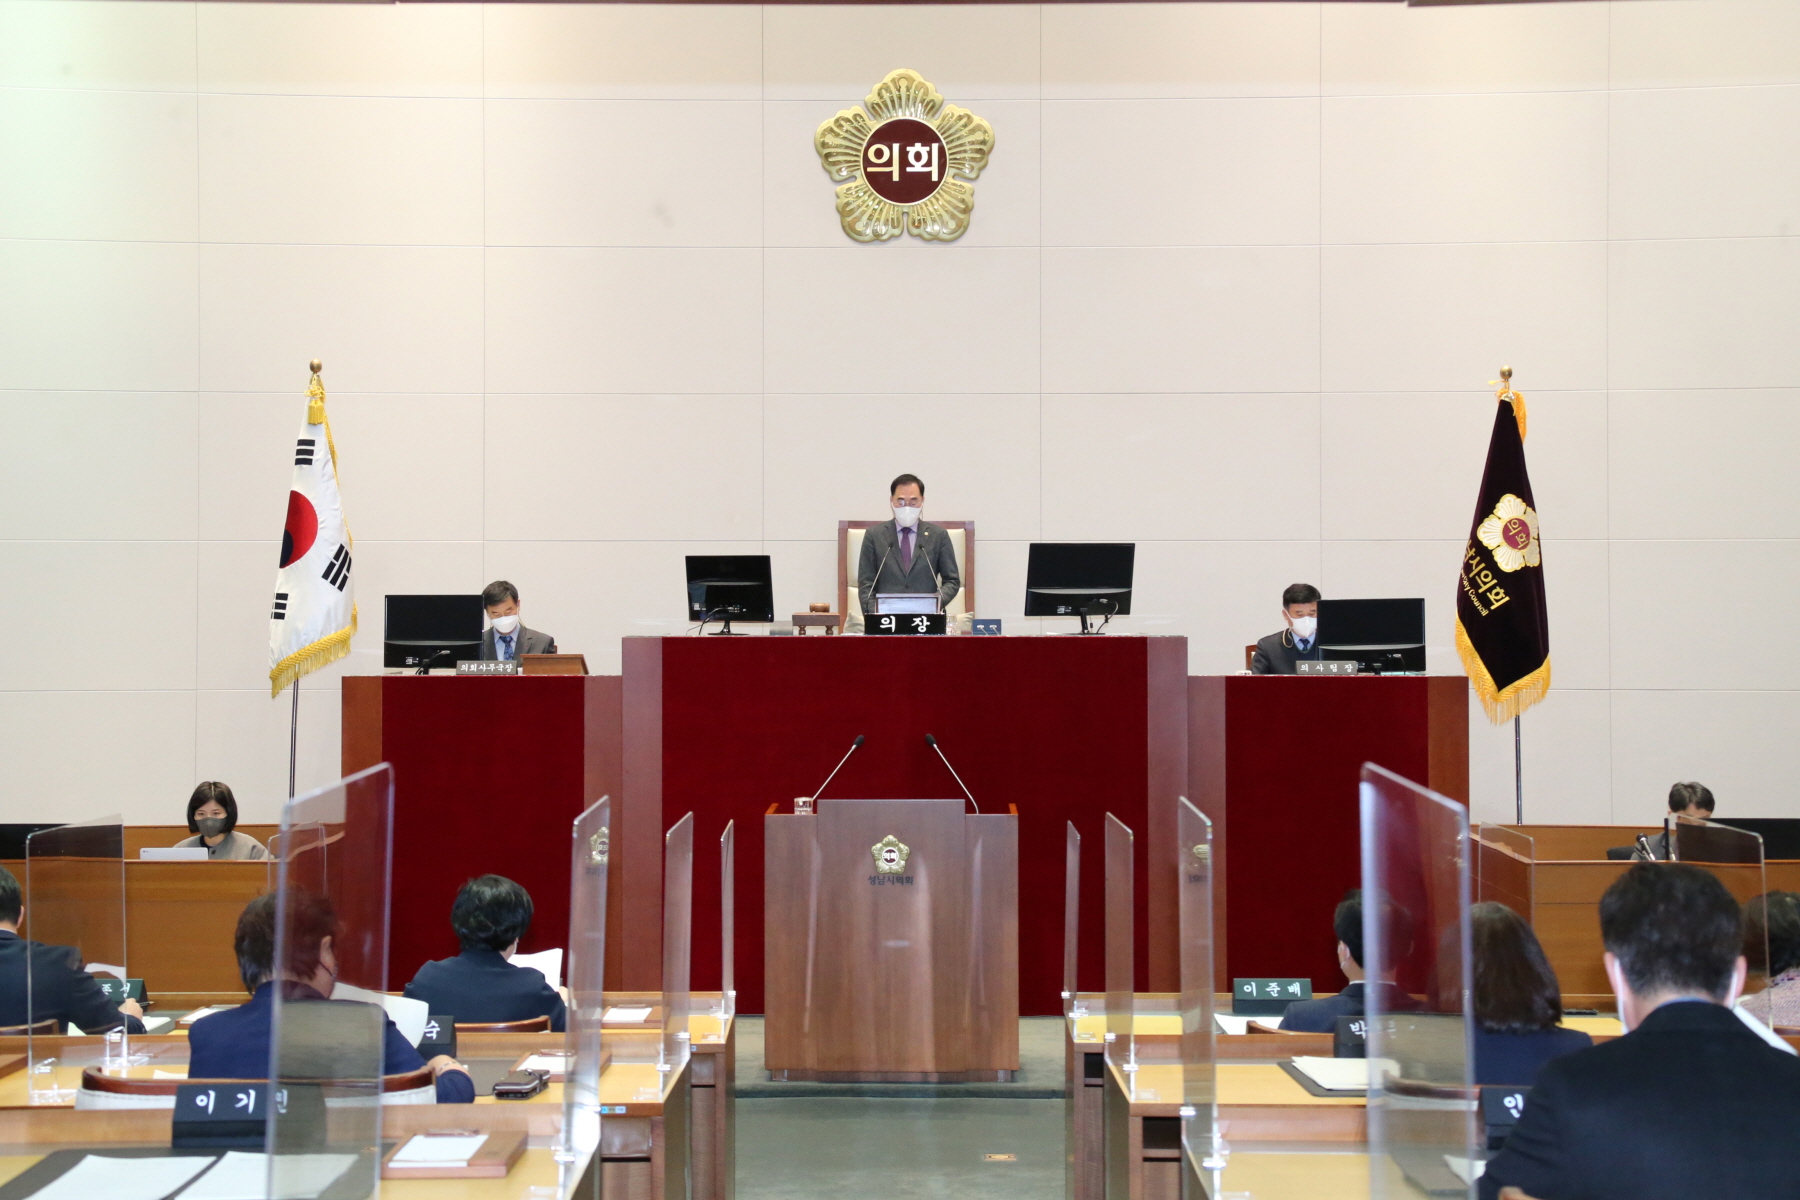 성남시의회, 지역사회 현안 해결에 고심 - 22일 폐회한 제261회 임시회서 새 의원발의 조례안 7건 통과 - 1